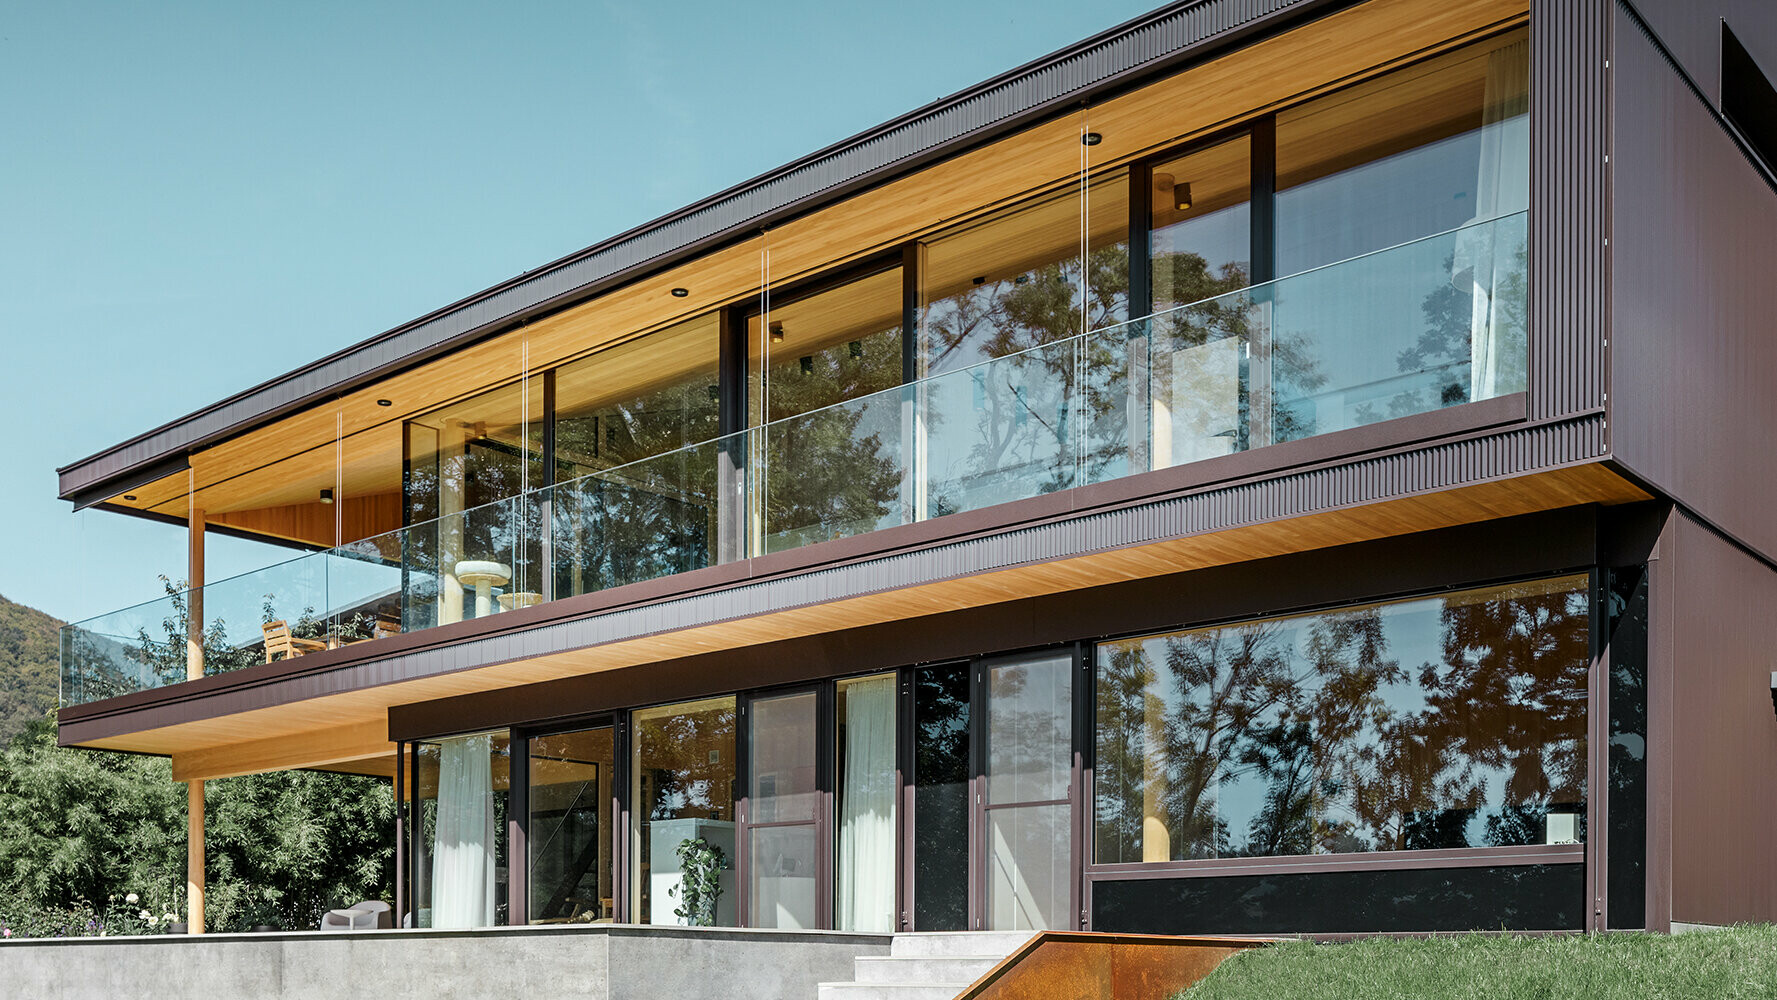 Új családi ház nagy üvegfelületekkel és barna színű alumíniumhomlokzattal